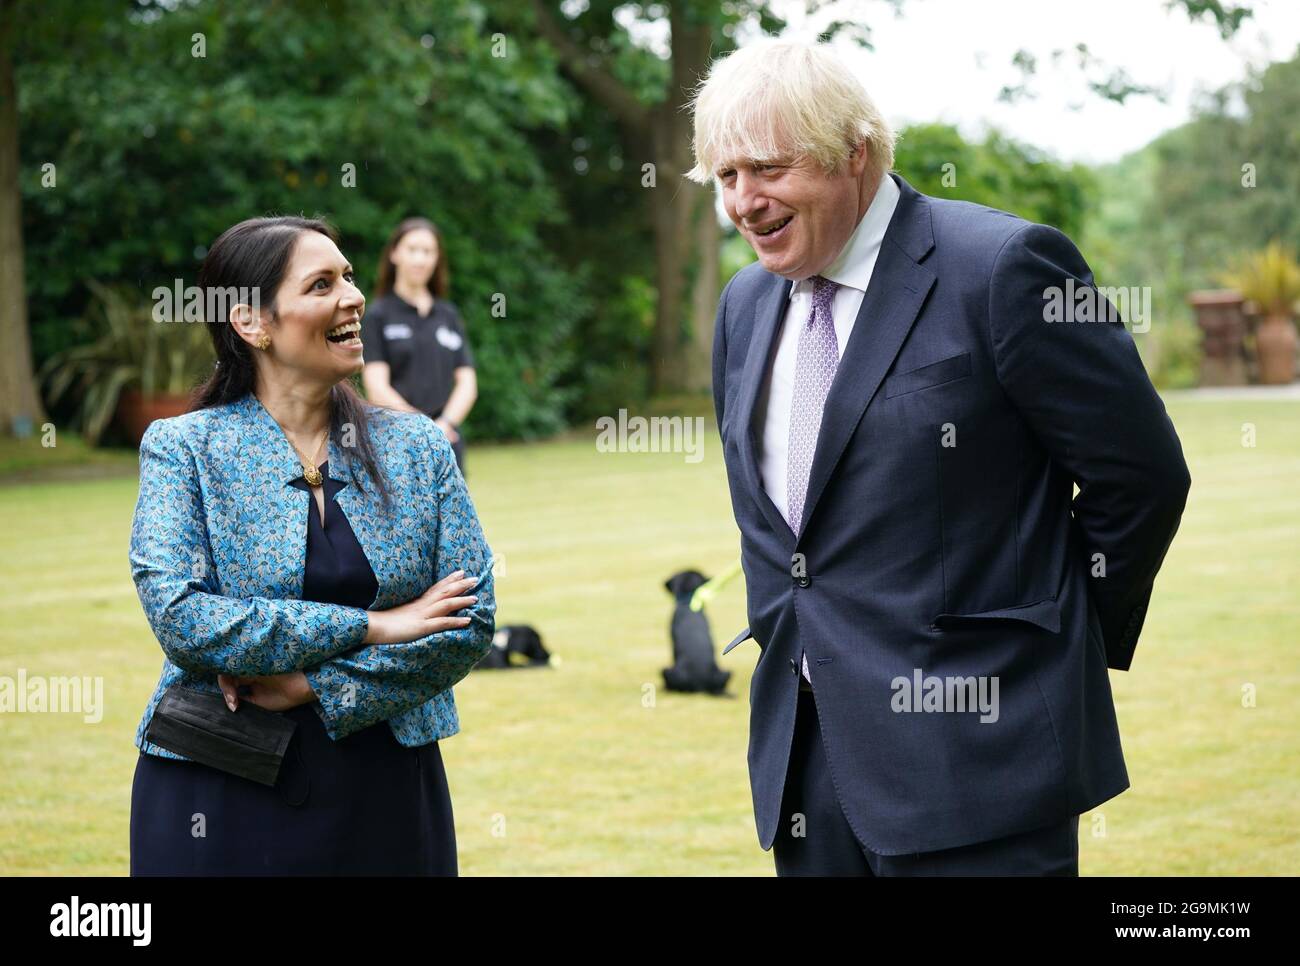 Le Premier ministre Boris Johnson et le secrétaire d'État à l'intérieur, Priti Patel, lors d'une visite au quartier général de la police de Surrey, à Guildford, dans le Surrey, pour coïncider avec la publication du Plan de lutte contre le crime du gouvernement. Date de la photo: Mardi 27 juillet 2021. Banque D'Images